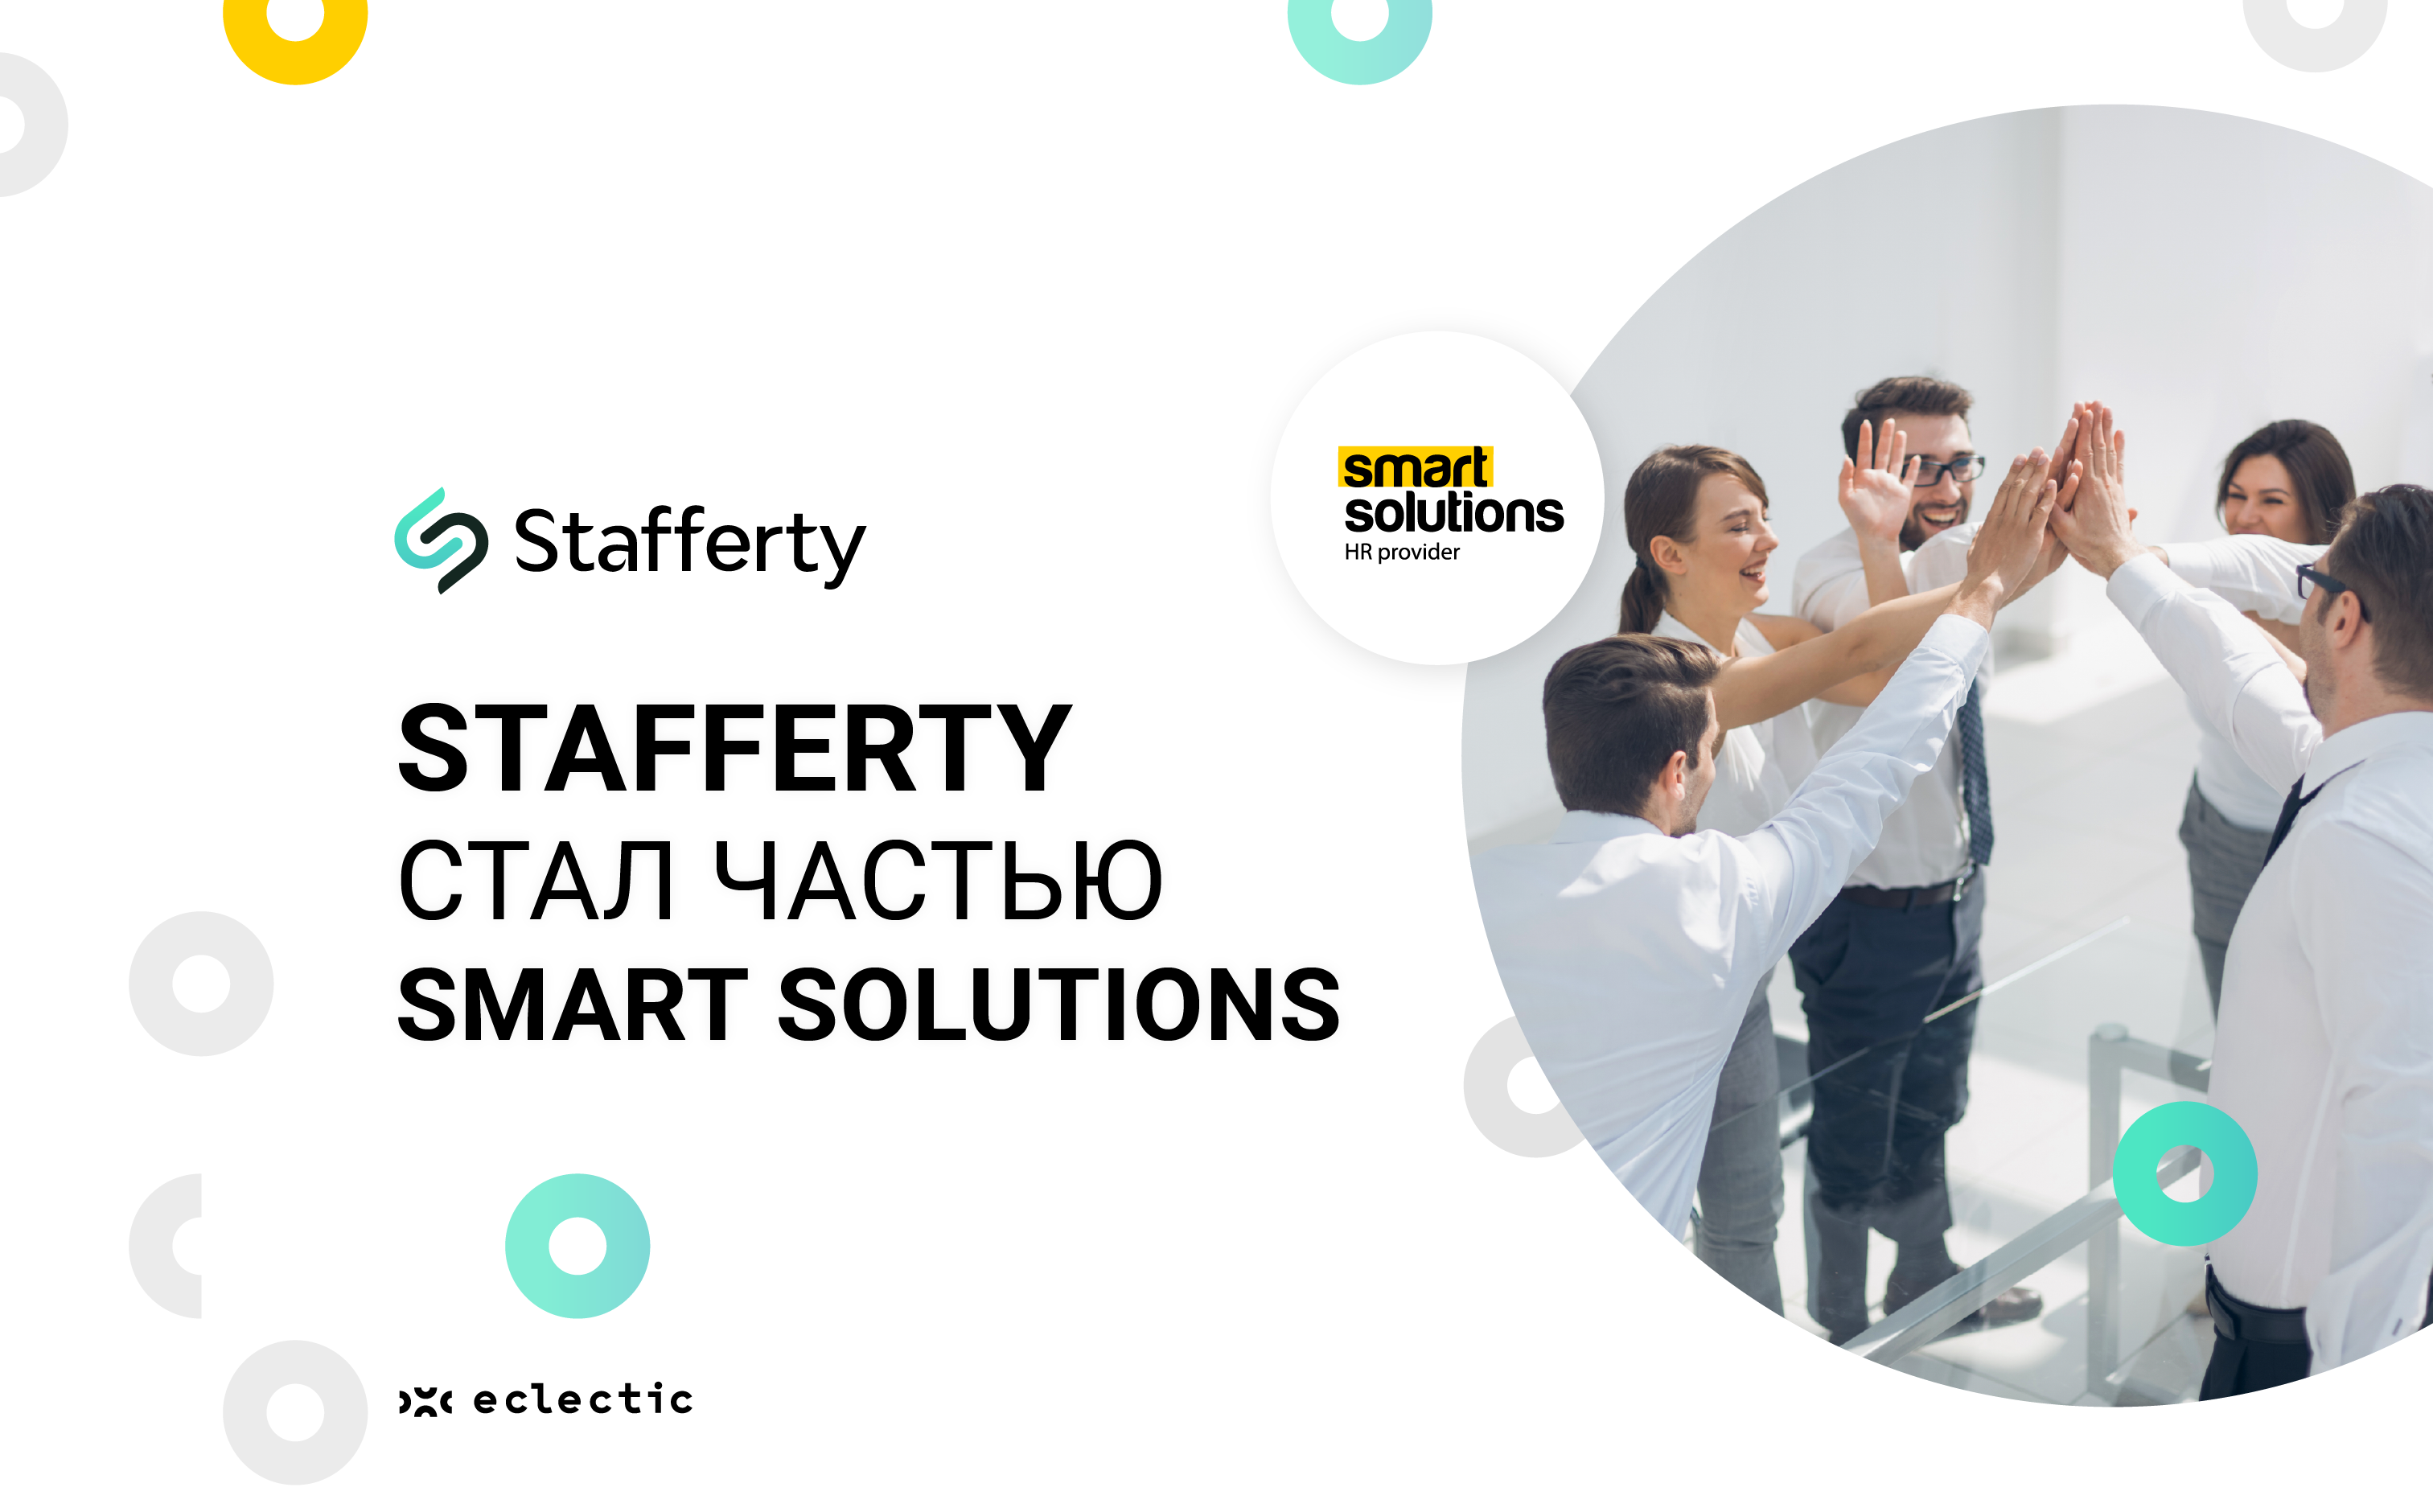 Поставщик HR-услуг Stafferty стал частью Smart Solutions